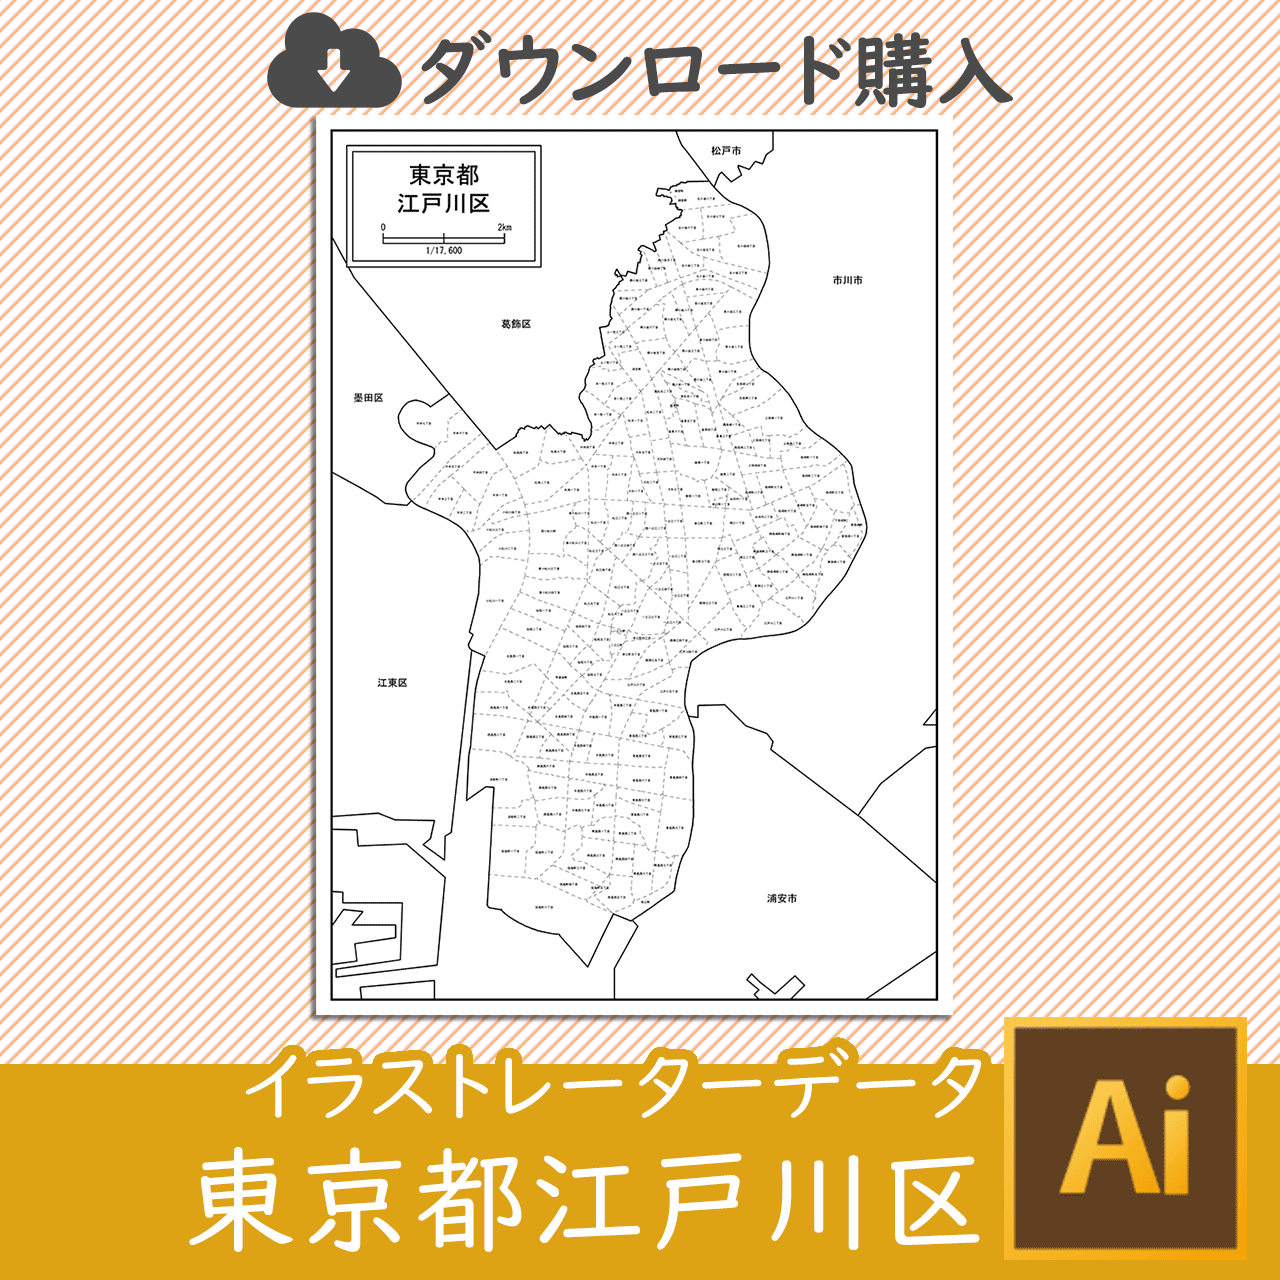 東京都江戸川区のaiデータのサムネイル画像